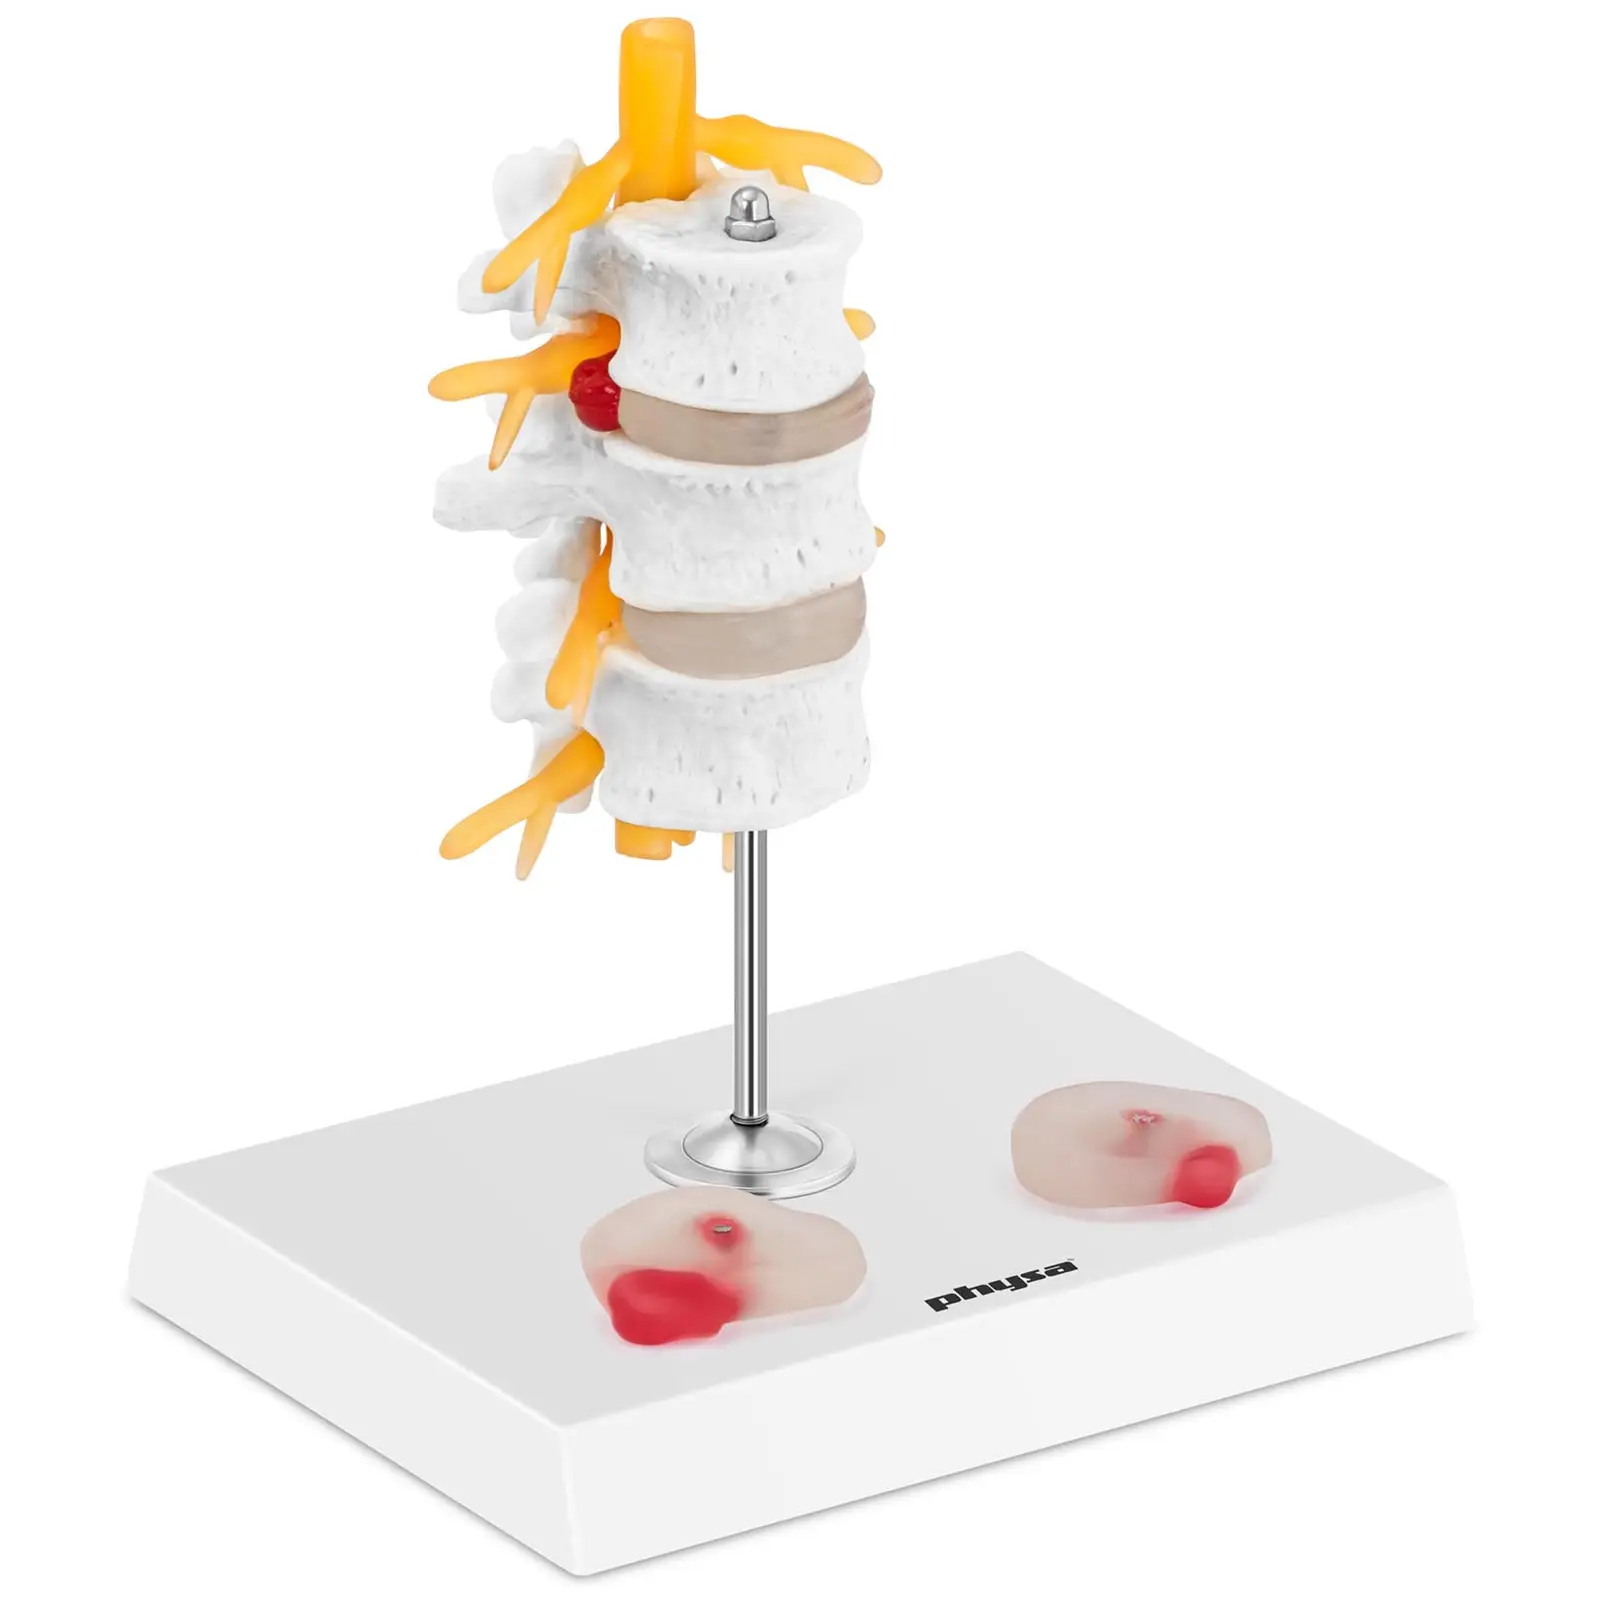 Modelo anatómico de discos intervertebrales - hernia discal - coloreado